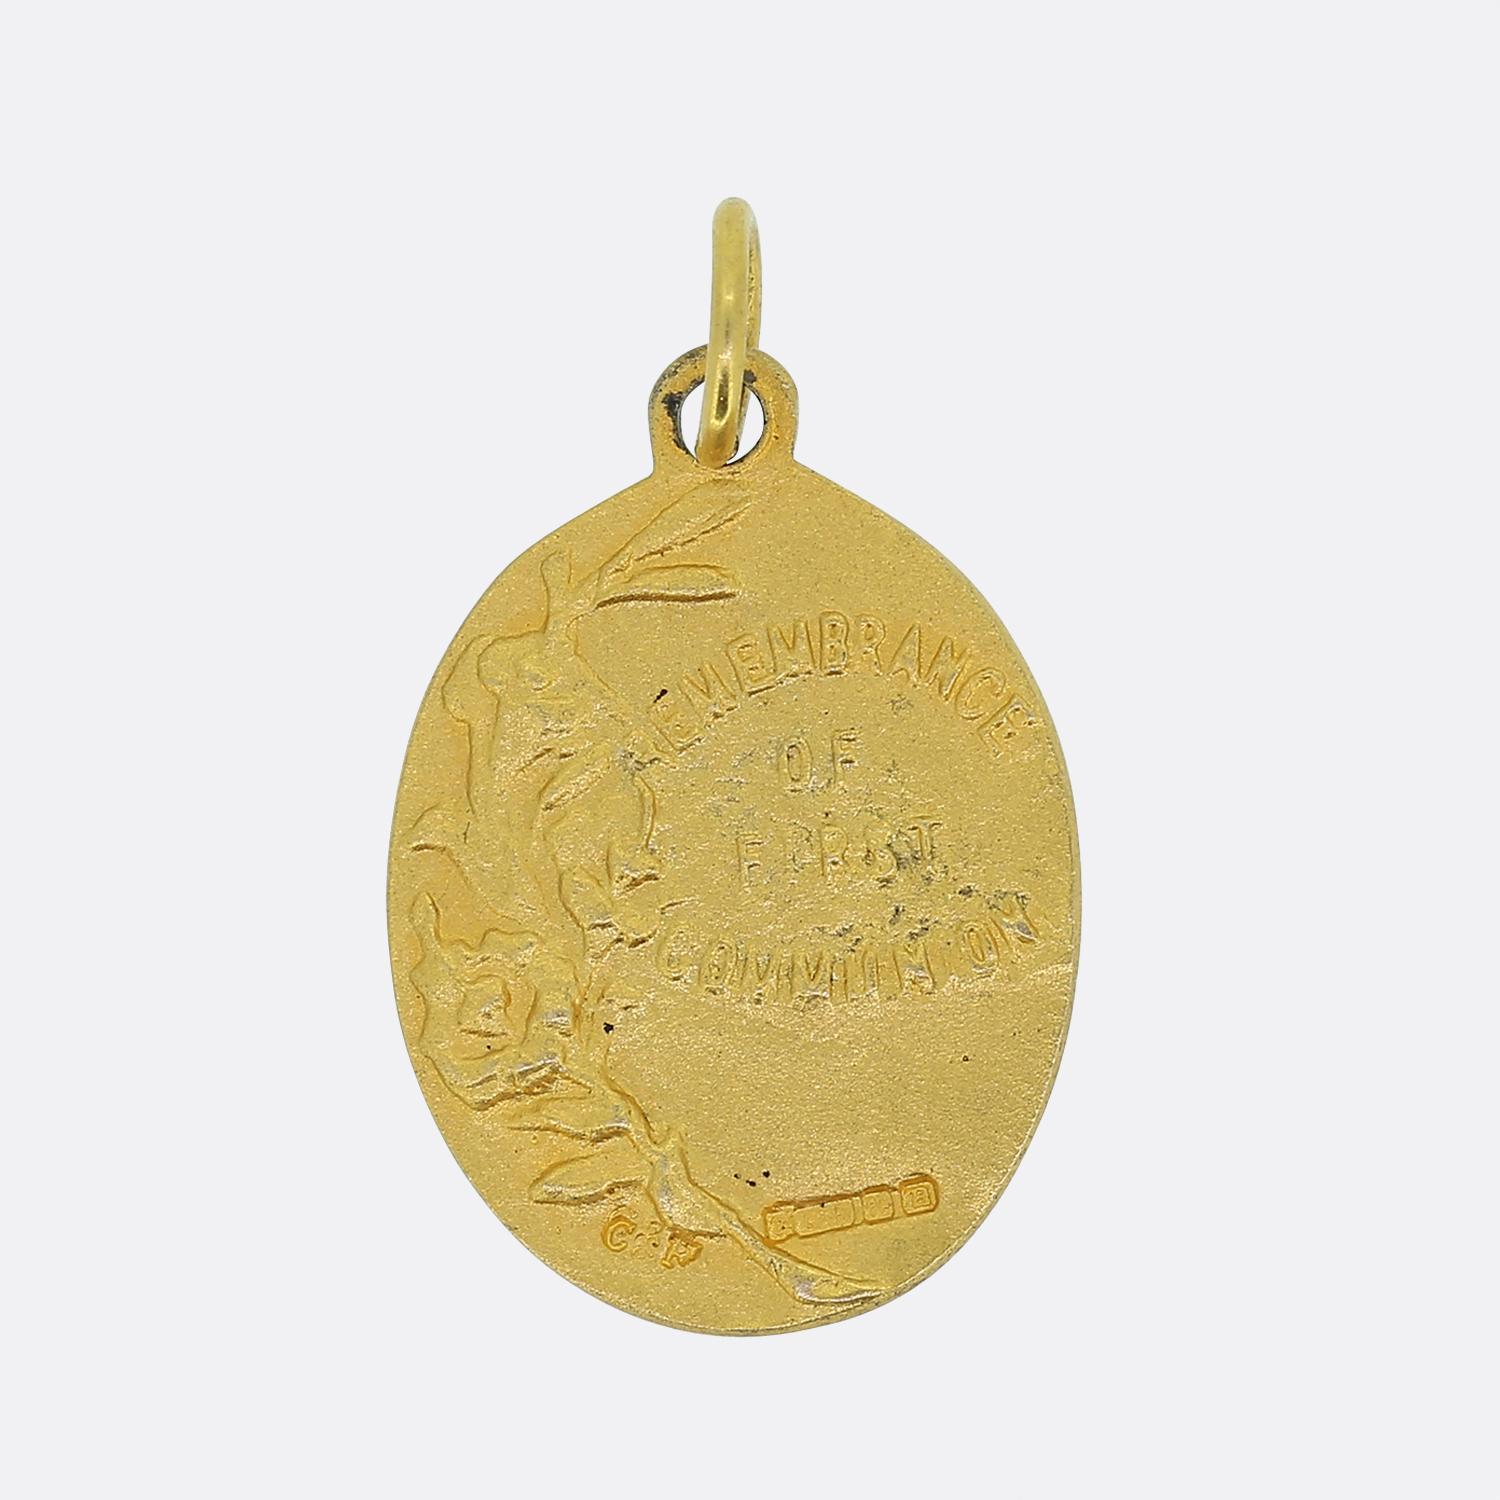 Voici un charmant pendentif médaillon destiné à être offert en cadeau car il représente la première communion de la vie d'une personne. Cette pièce vintage a été fabriquée dans un riche or jaune 9ct et présente un duo de motifs 3D très détaillés.